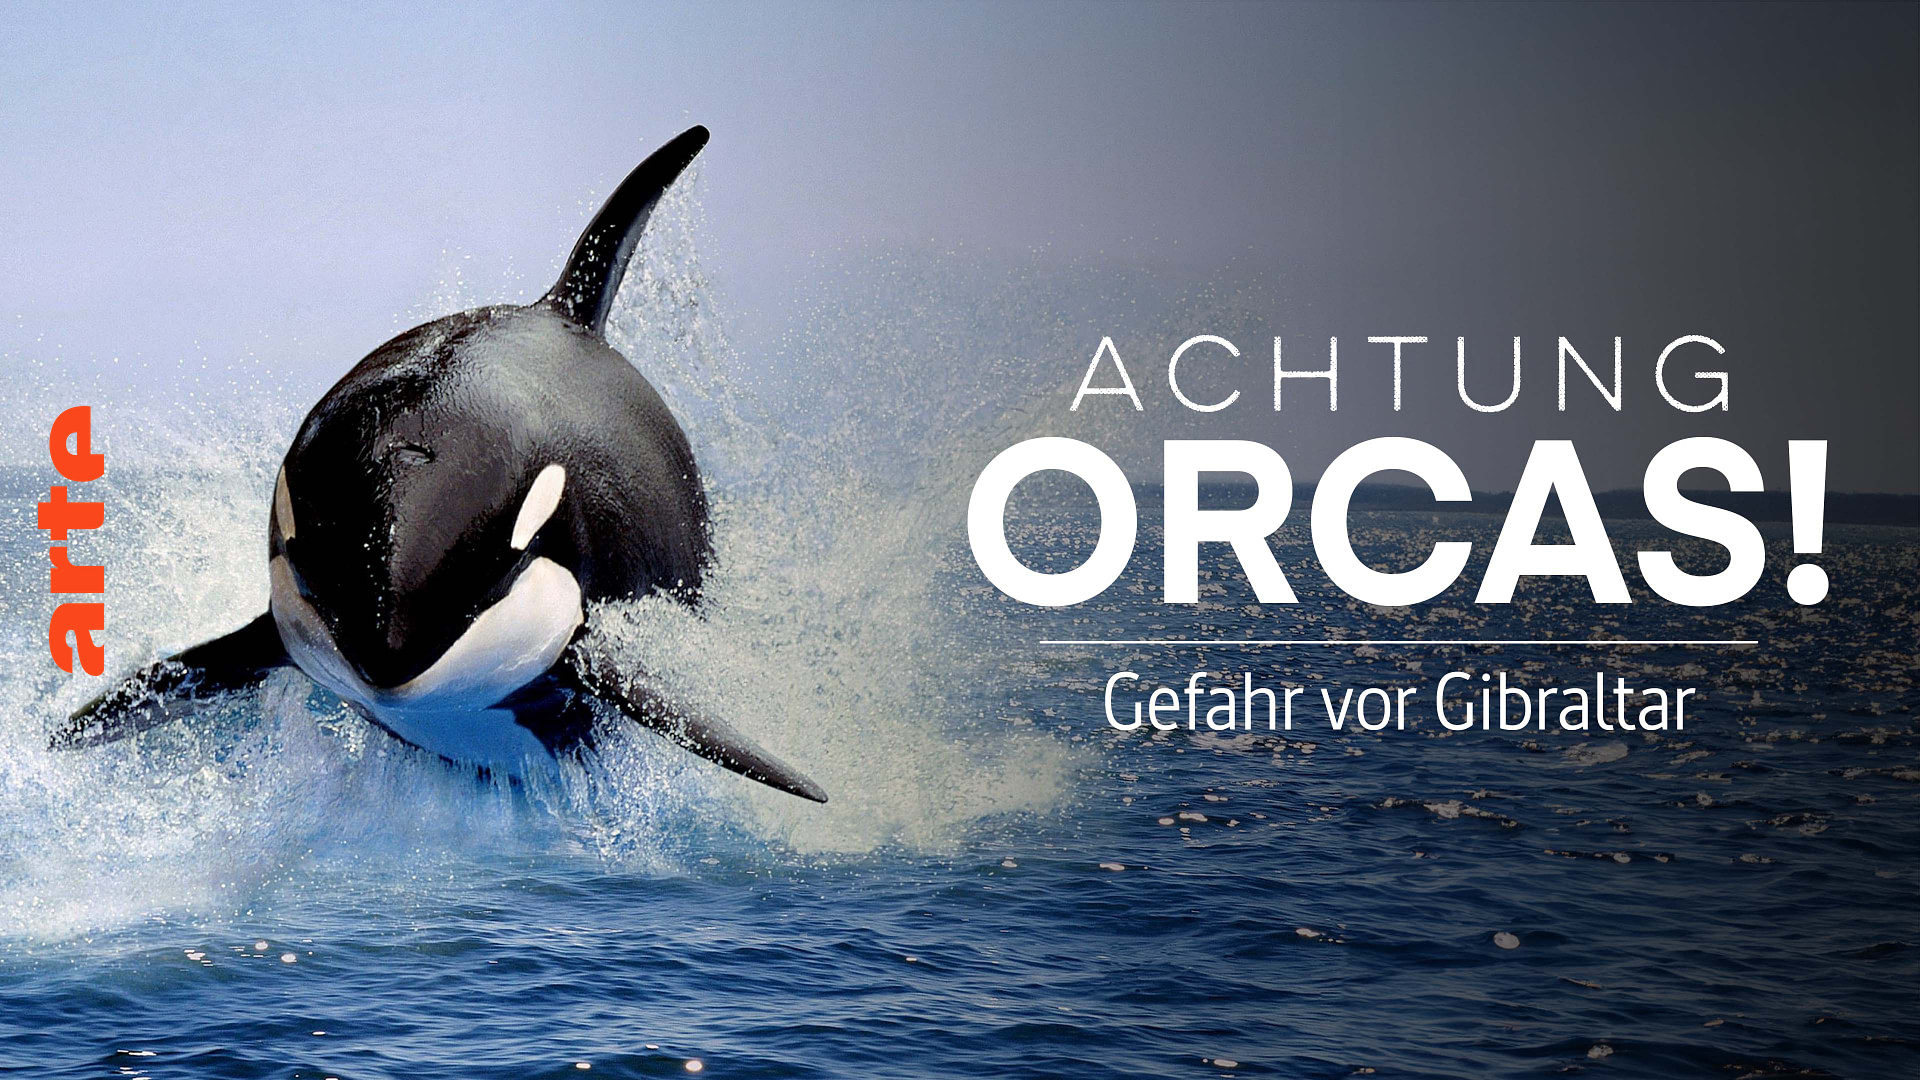 Achtung Orcas!